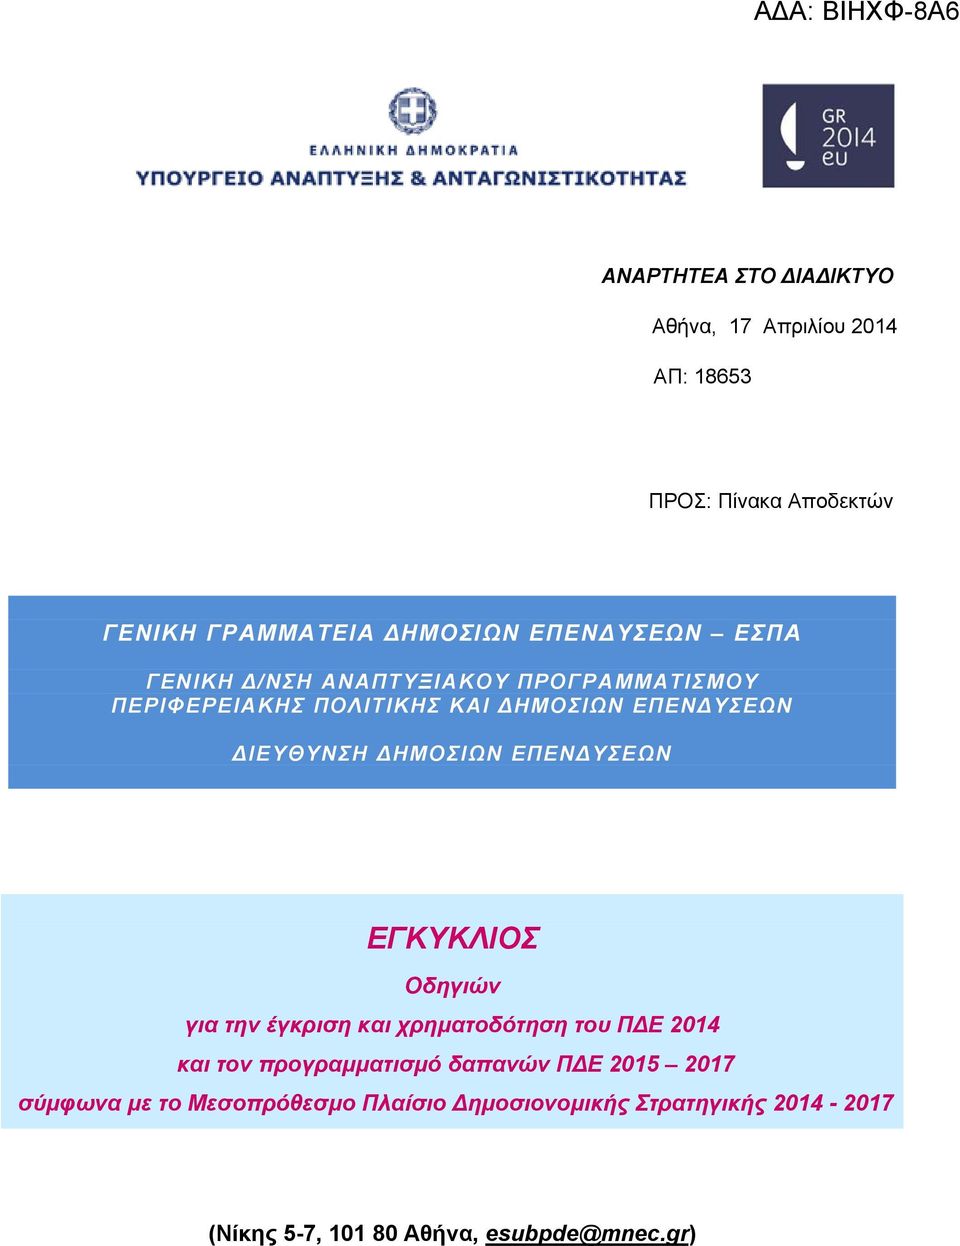 ΕΓΚΥΚΛΙΟΣ Οδηγιών για την έγκριση και χρηματοδότηση του Π Ε 2014 και τον προγραμματισμό δαπανών Π Ε 2015